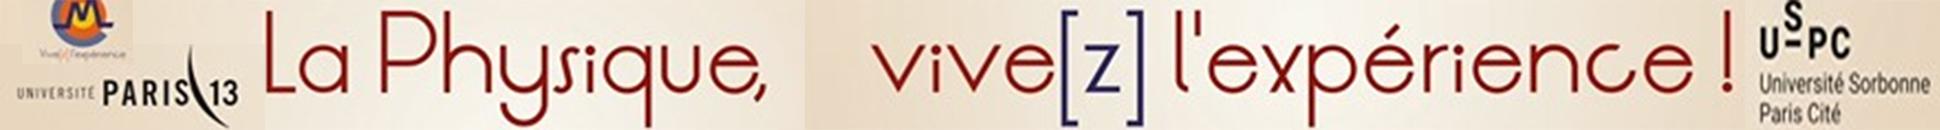 Logo Vive(z) l’expérience